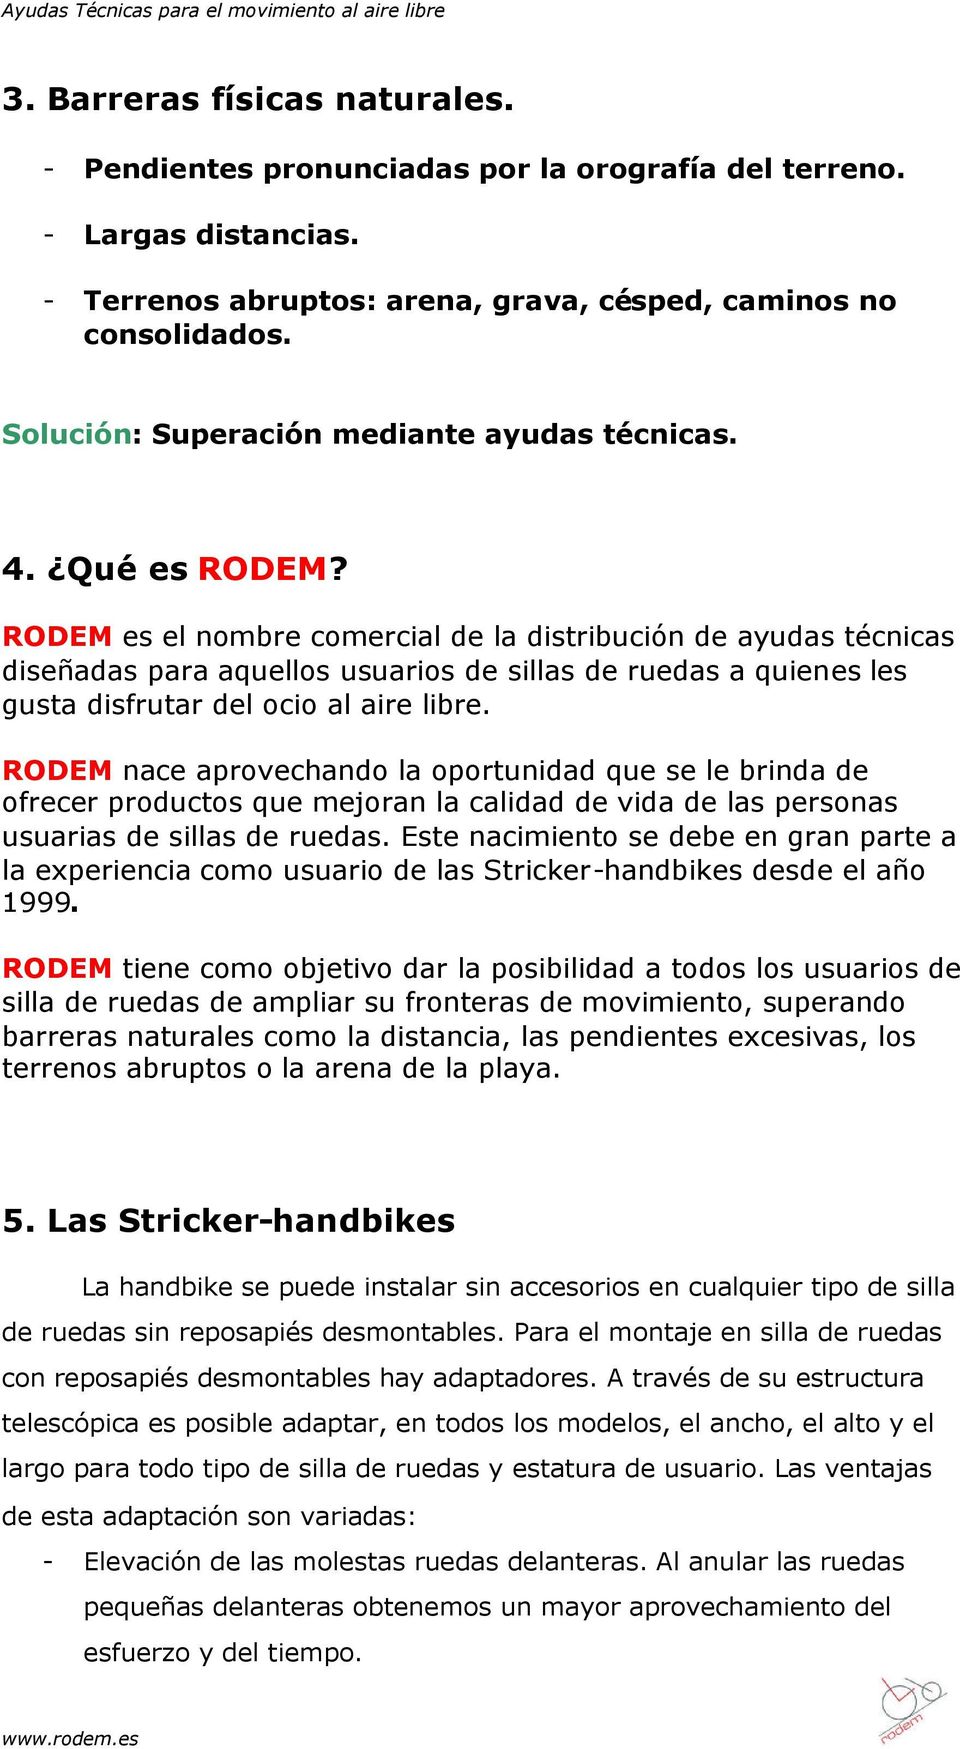 RODEM es el nombre comercial de la distribución de ayudas técnicas diseñadas para aquellos usuarios de sillas de ruedas a quienes les gusta disfrutar del ocio al aire libre.